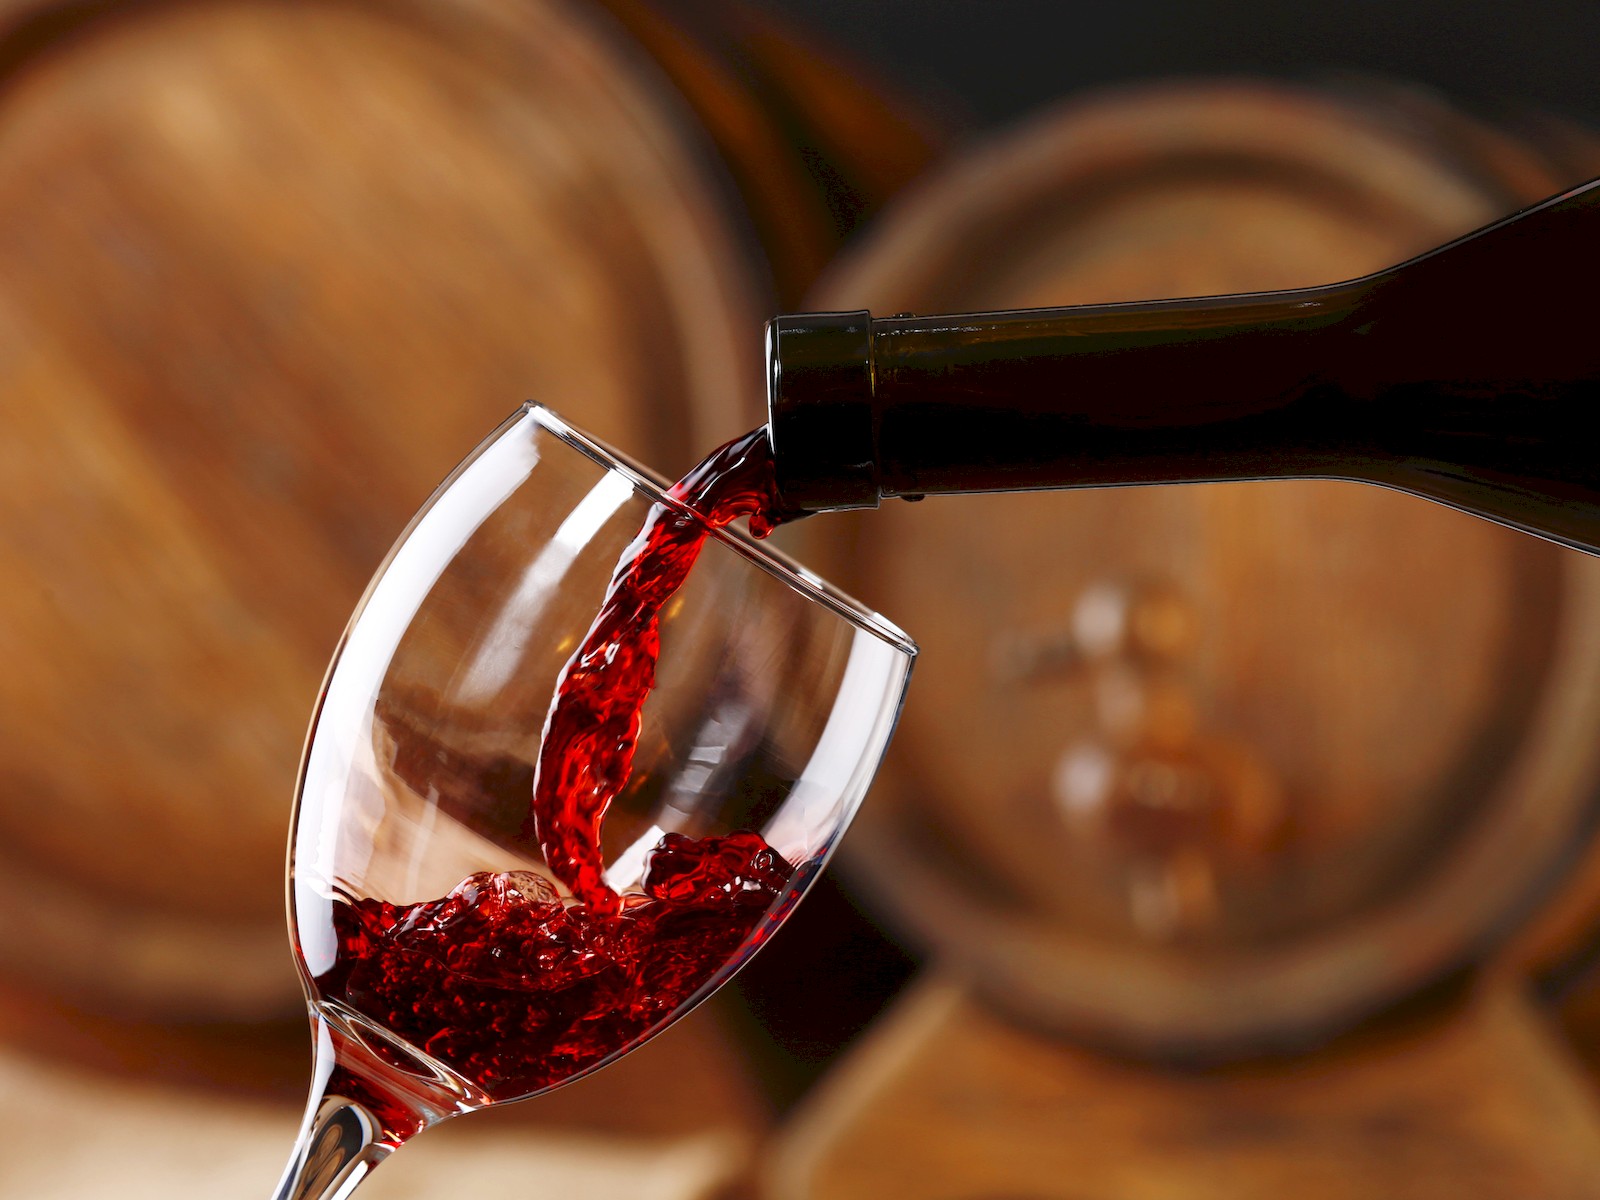 Kuru kırmızı şarap hipertansiyon için yararlıdır